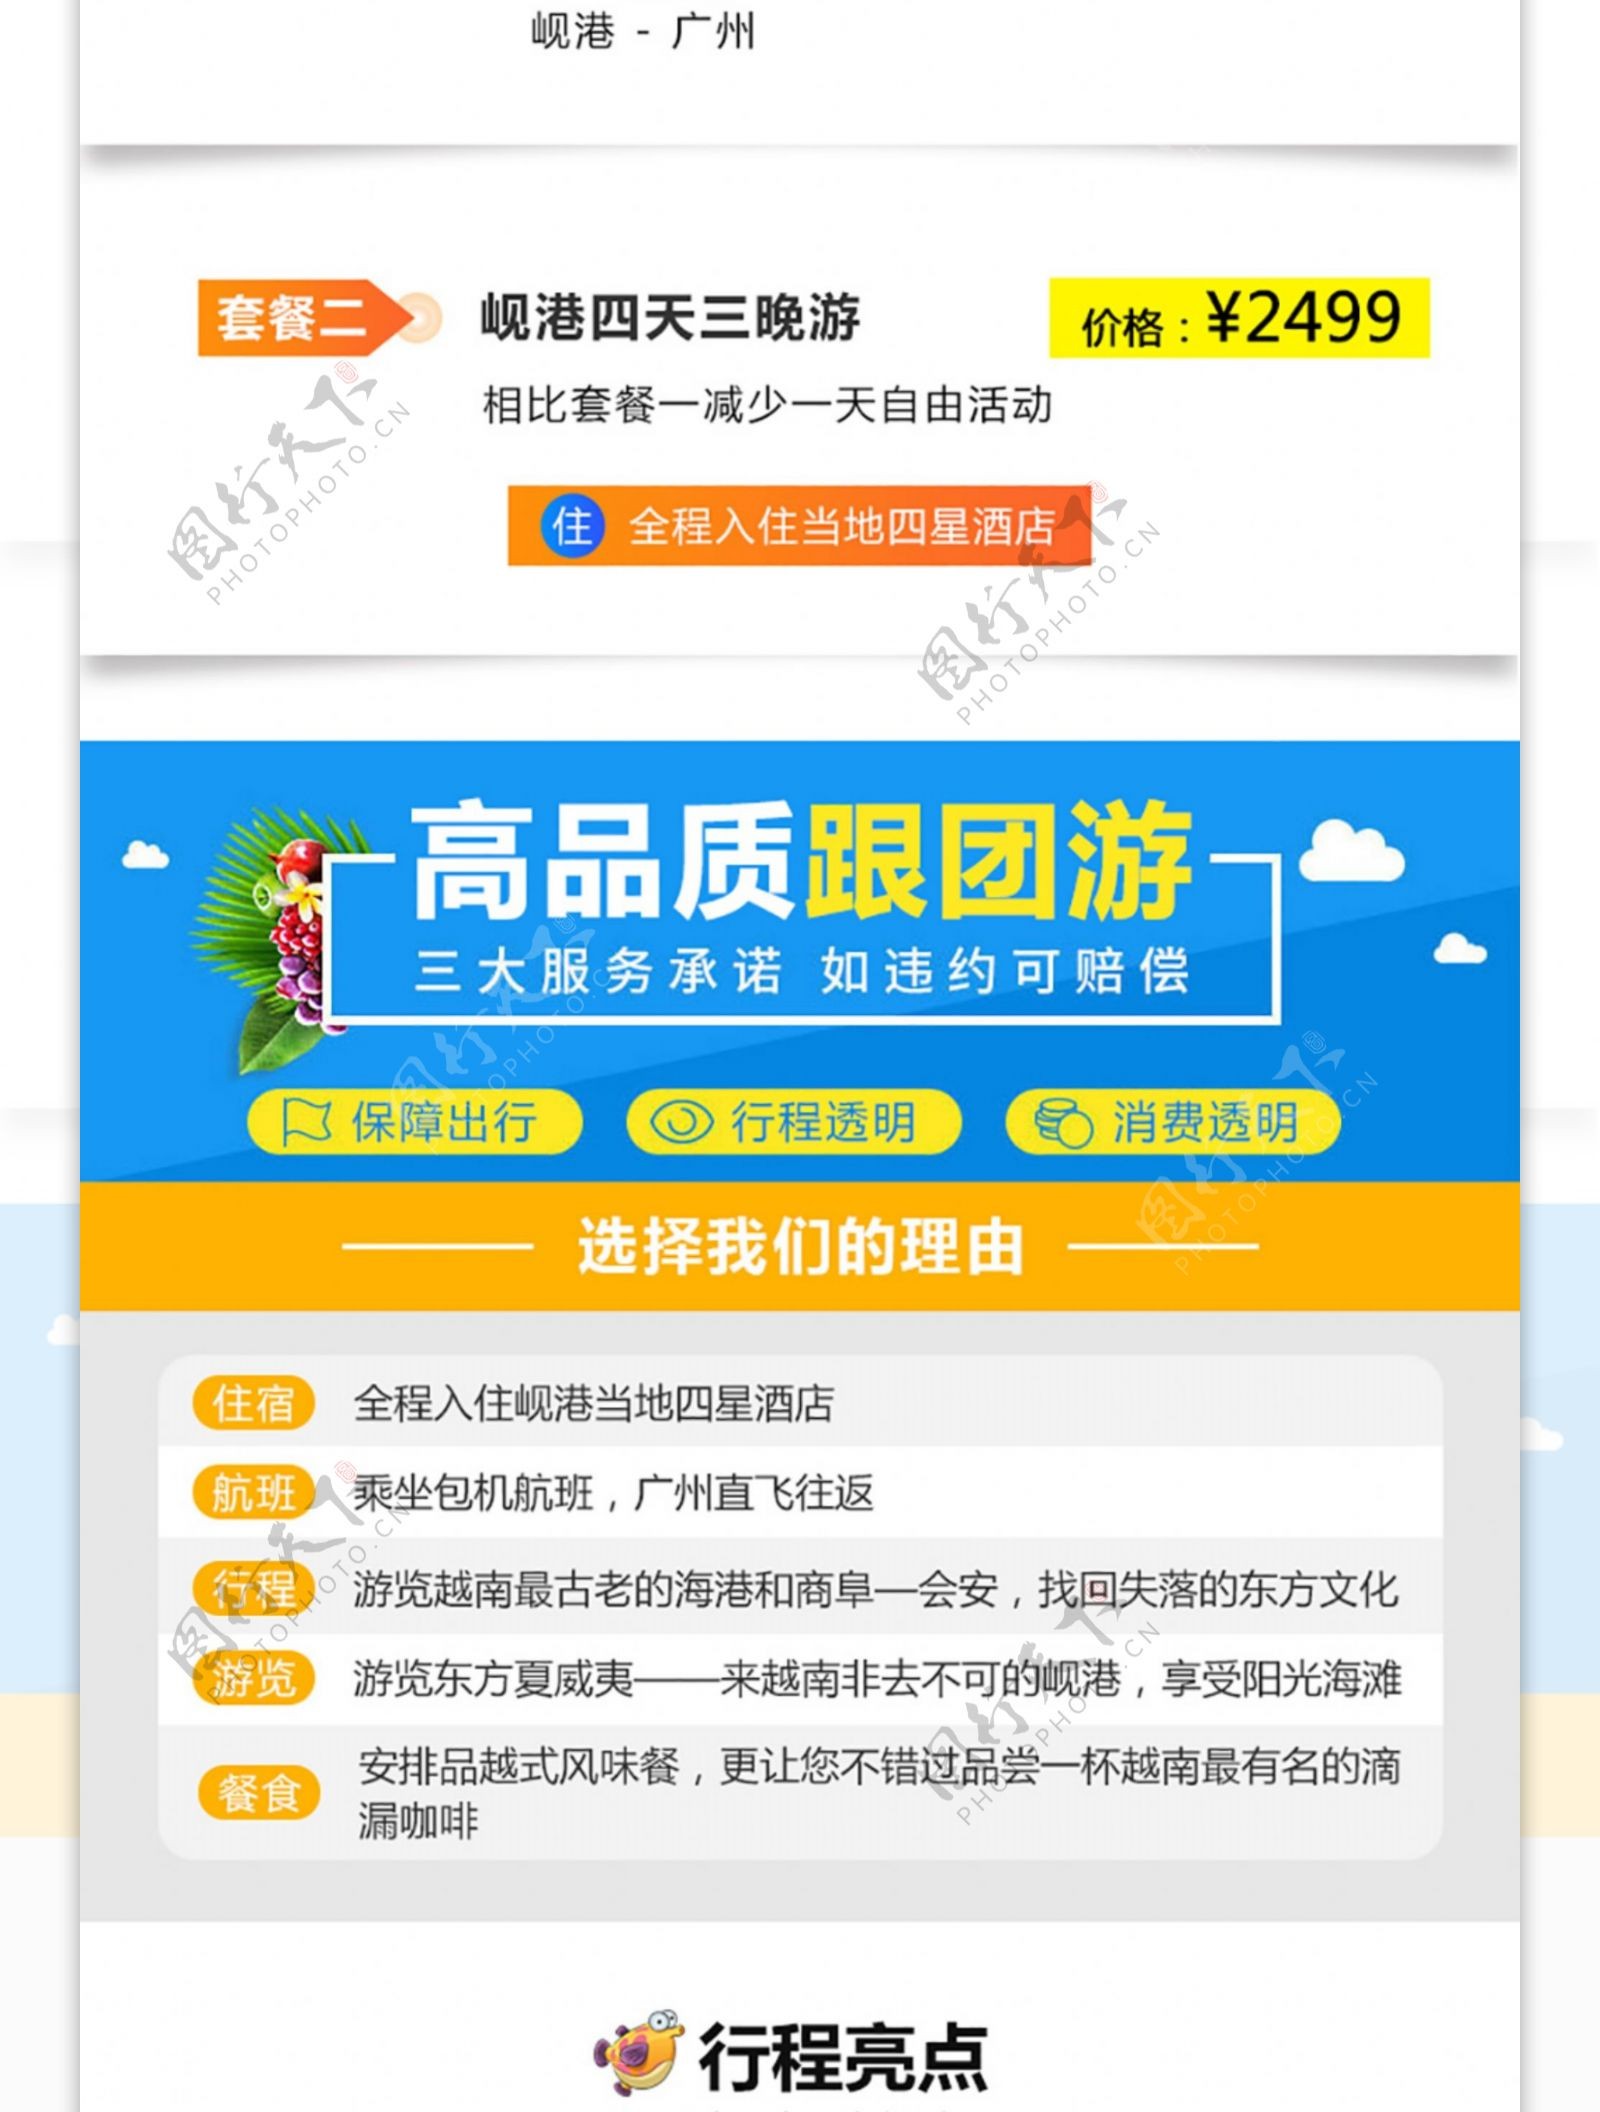 岘港海航旅游行程详情页PSD模板